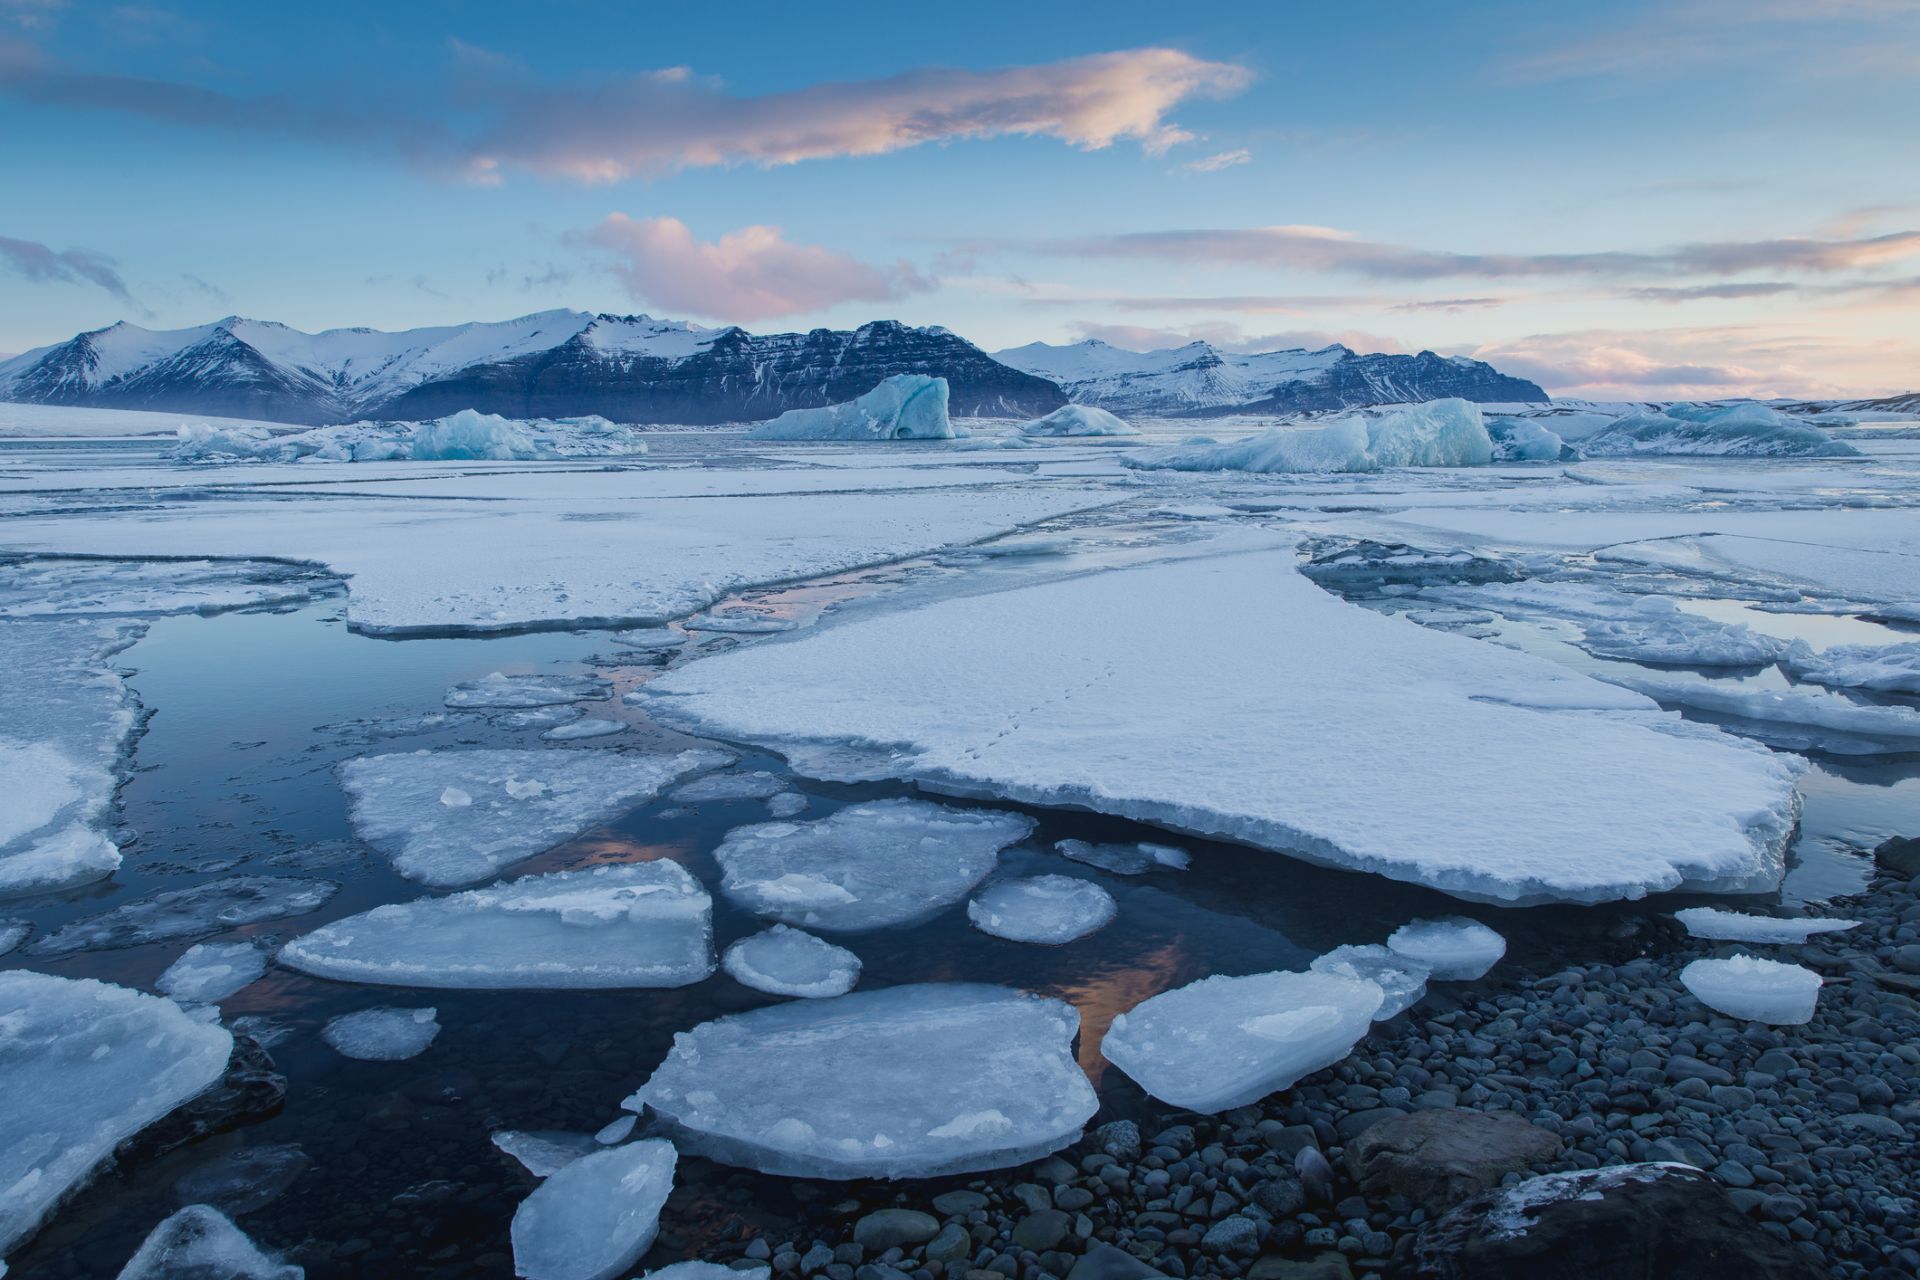 Повече от 40% от ледените шелфове на Антарктида са изчезнали от 1997 г. насам 